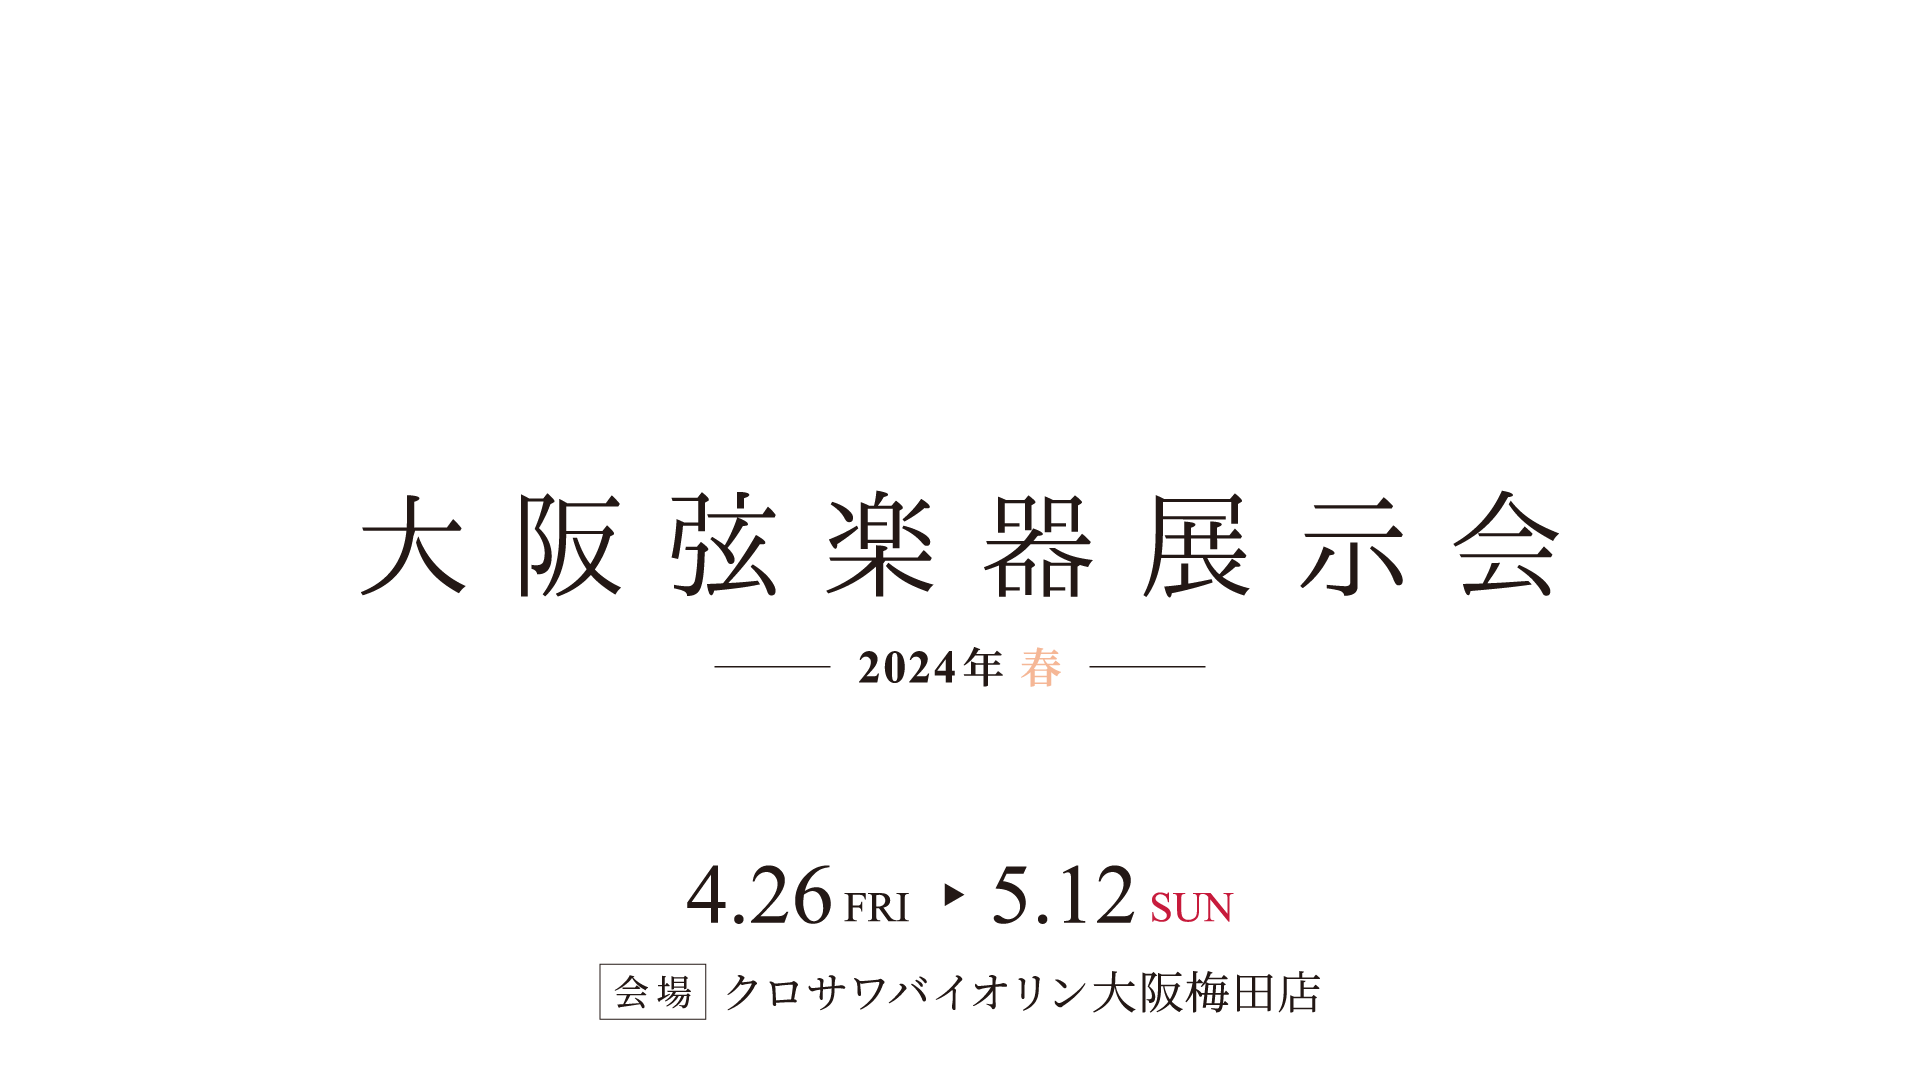 大阪弦楽器展示会 –2024年 春–